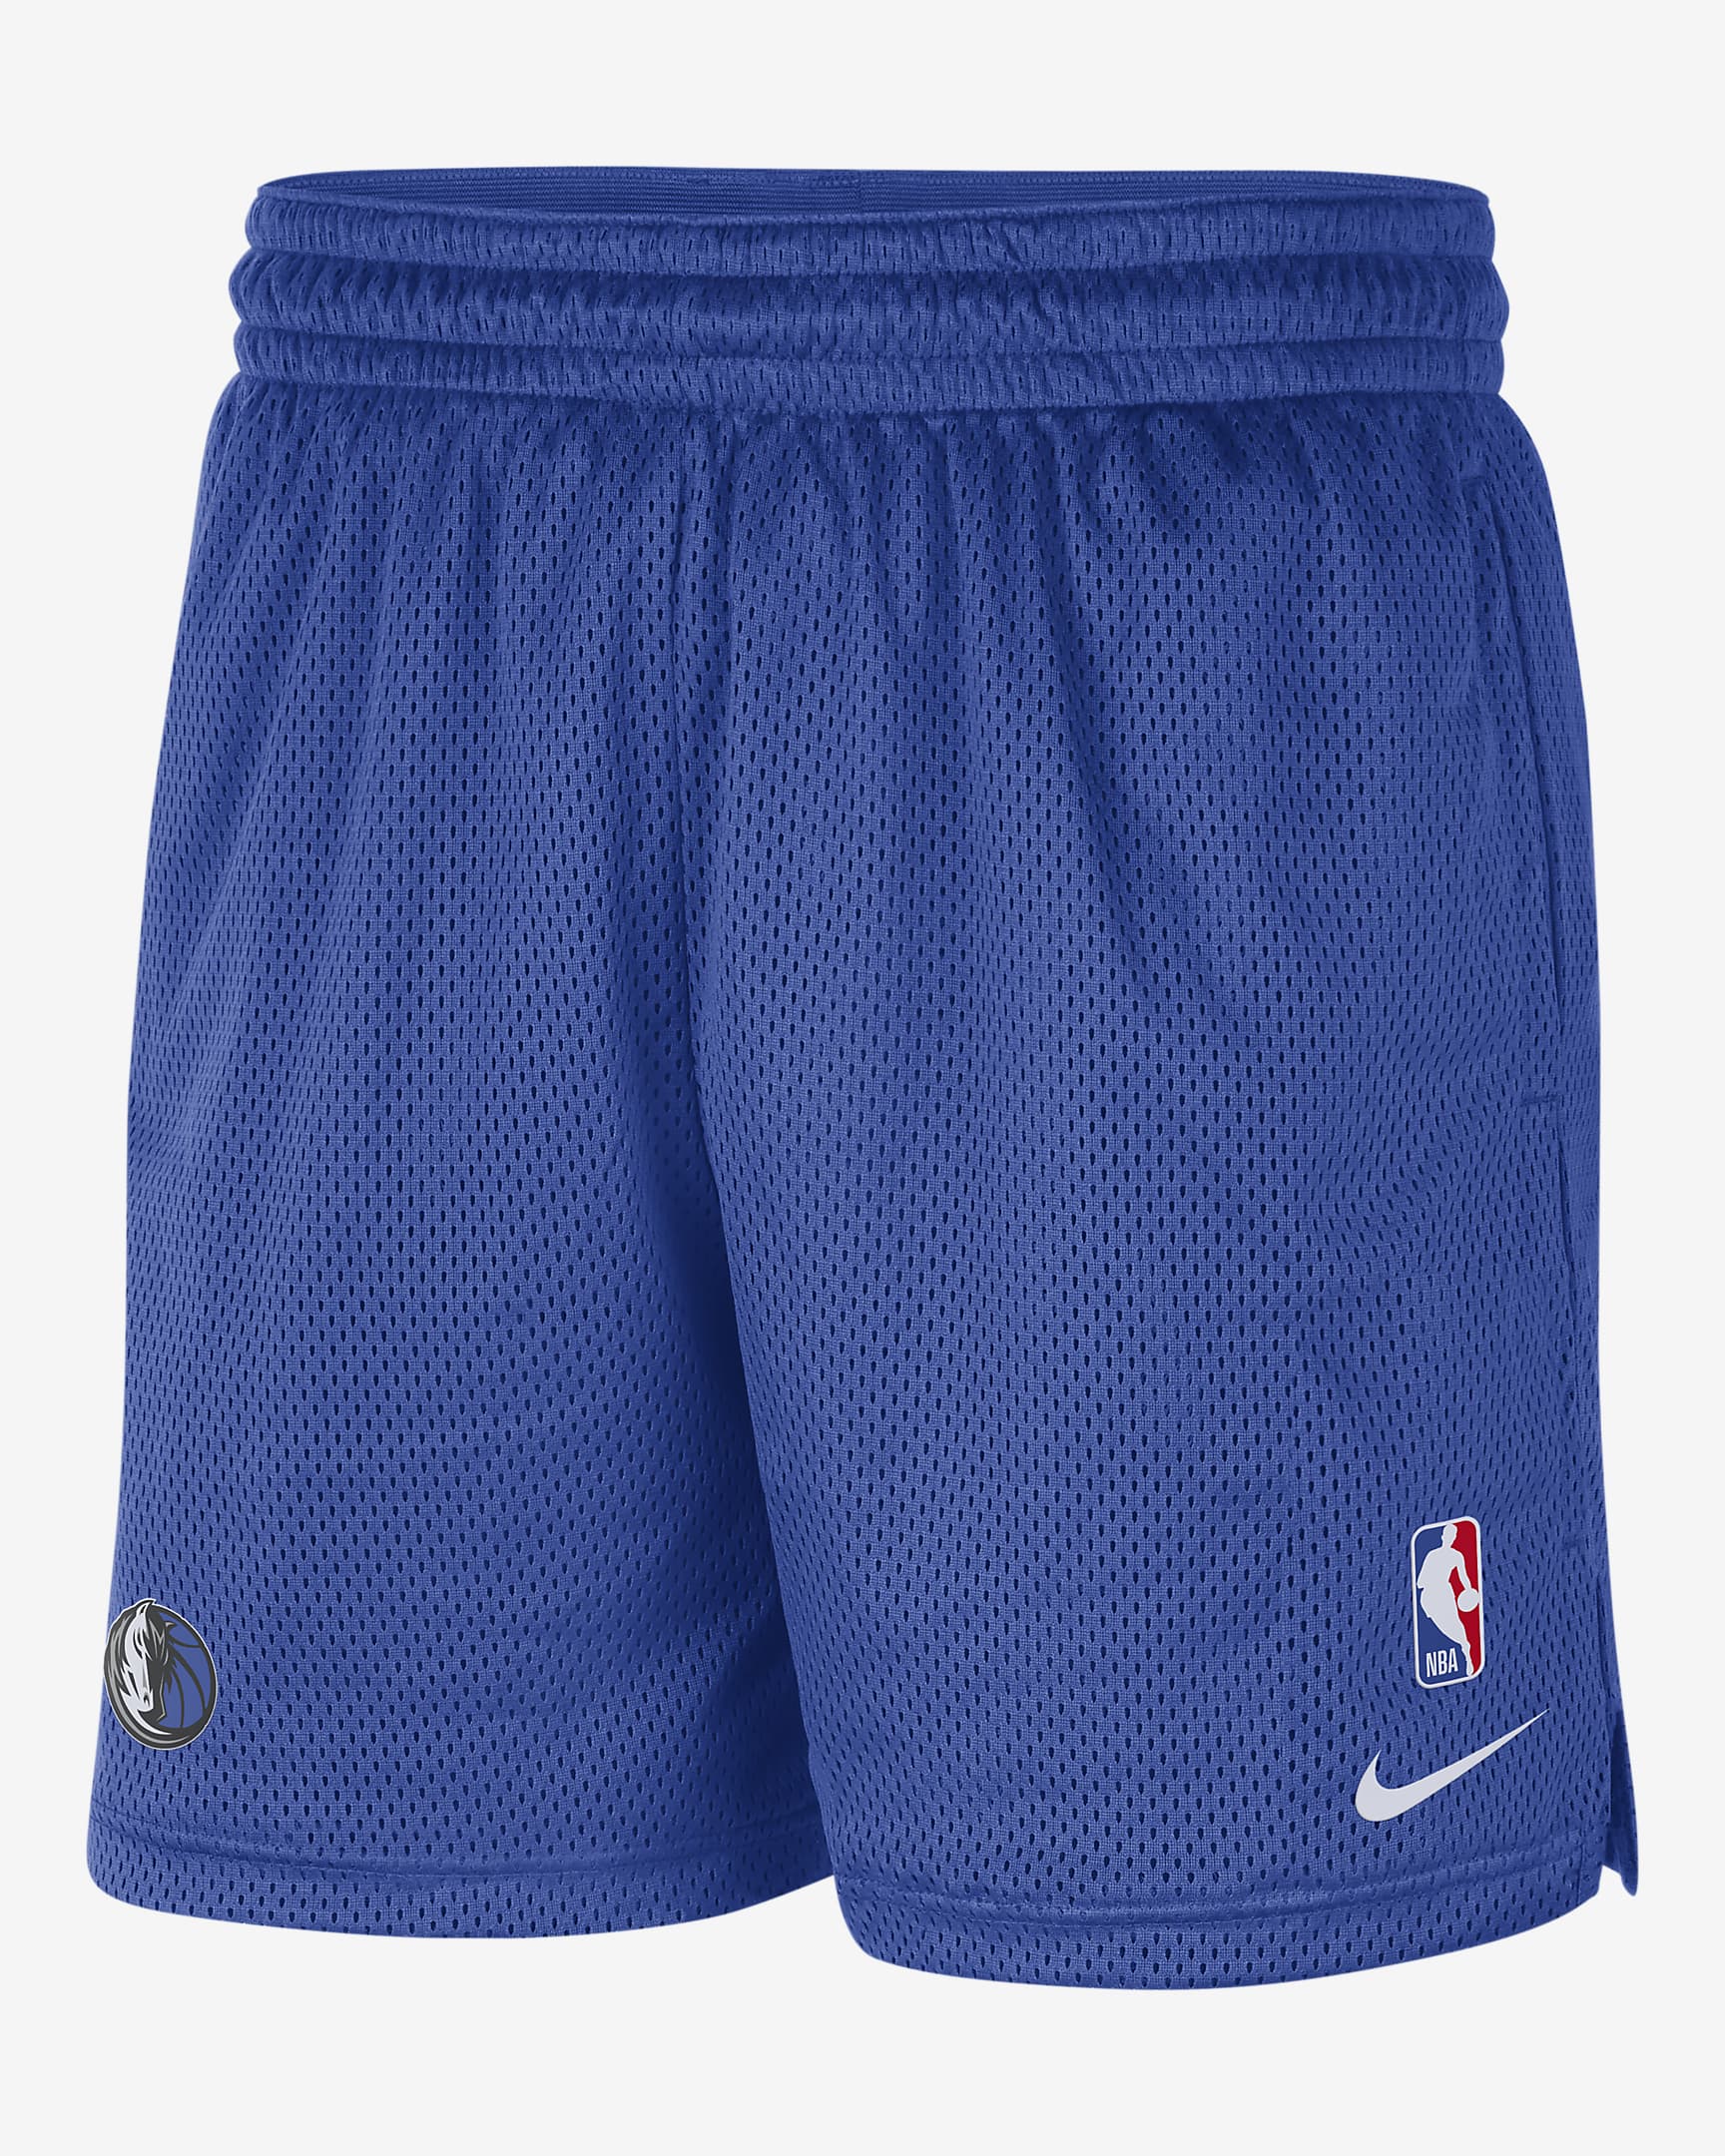 Dallas Mavericks Men's Nike NBA Shorts. Nike.com